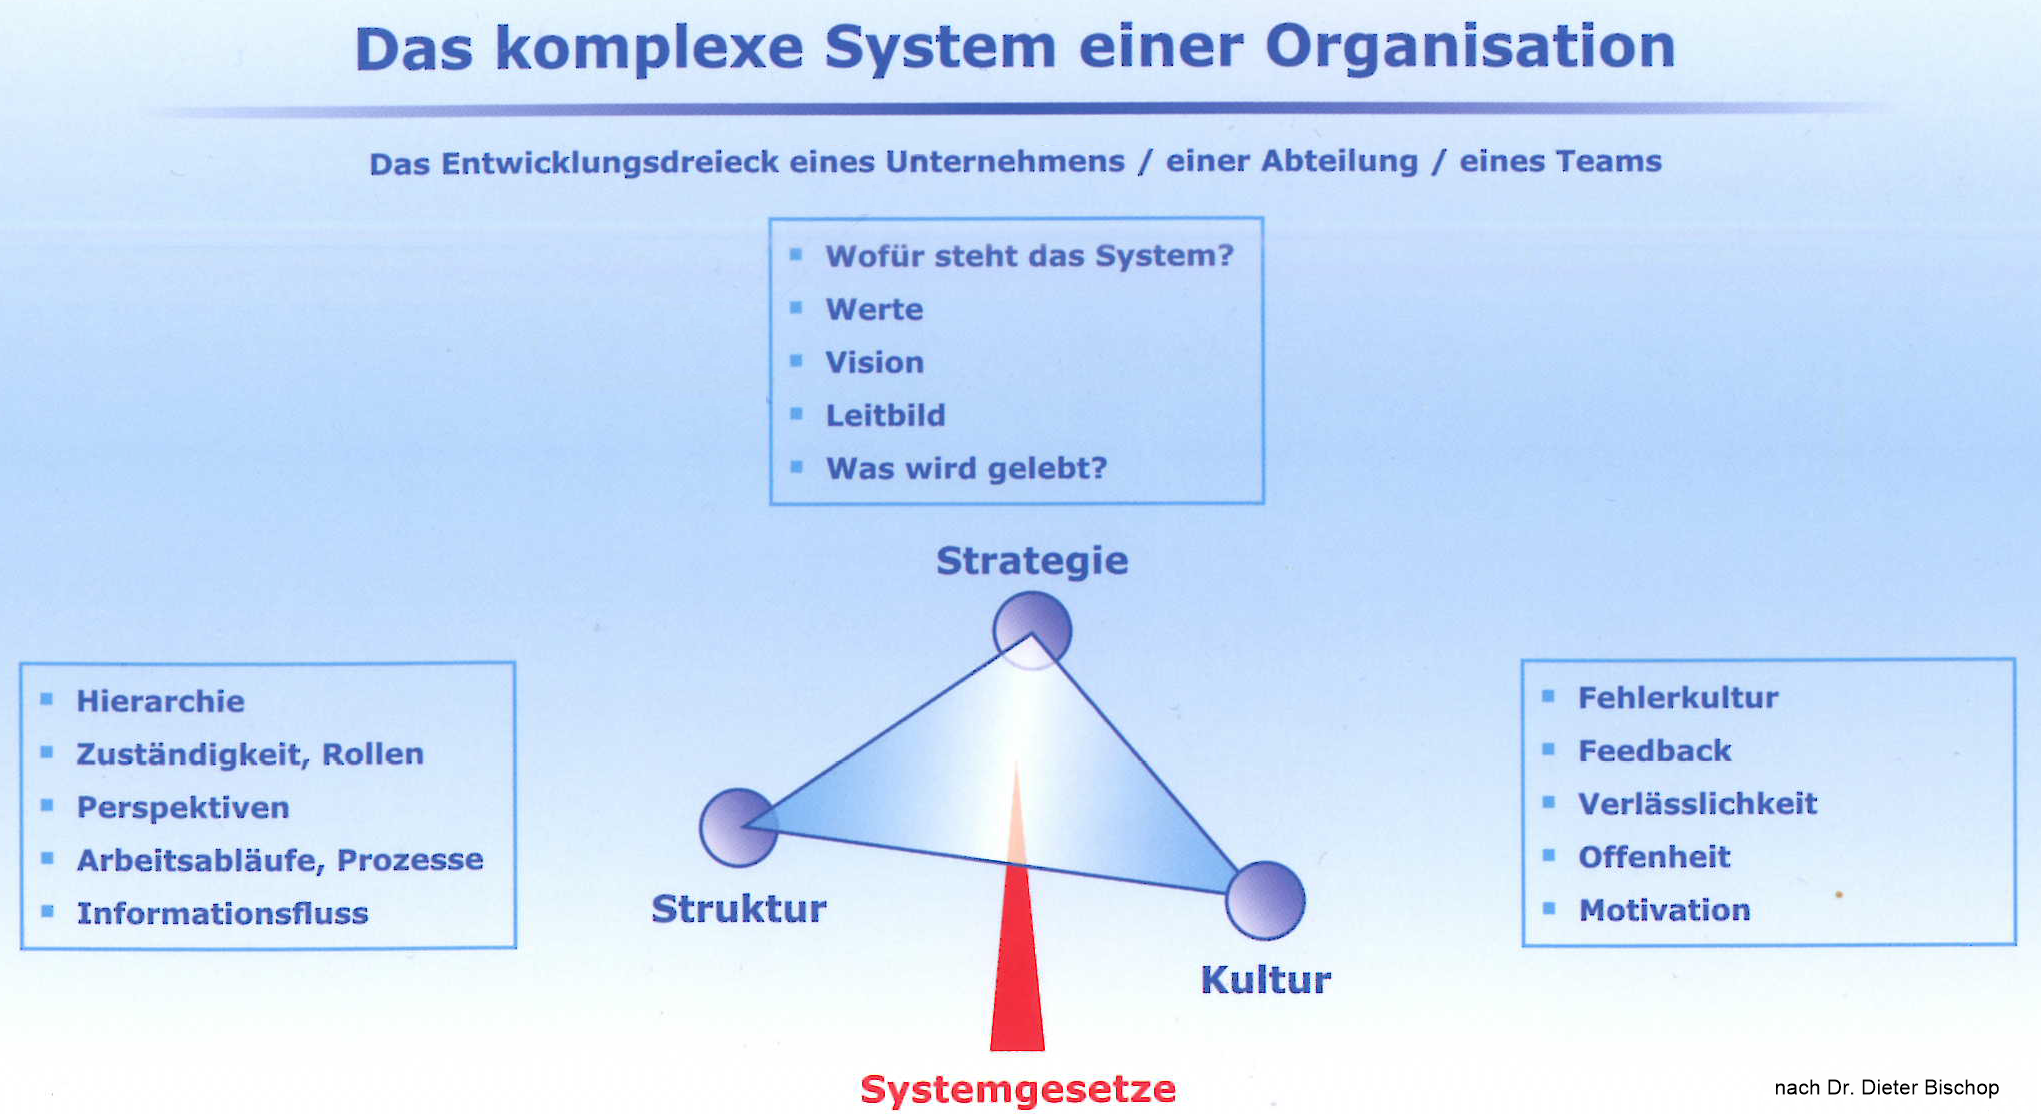 Das komplexe System einer Organisation